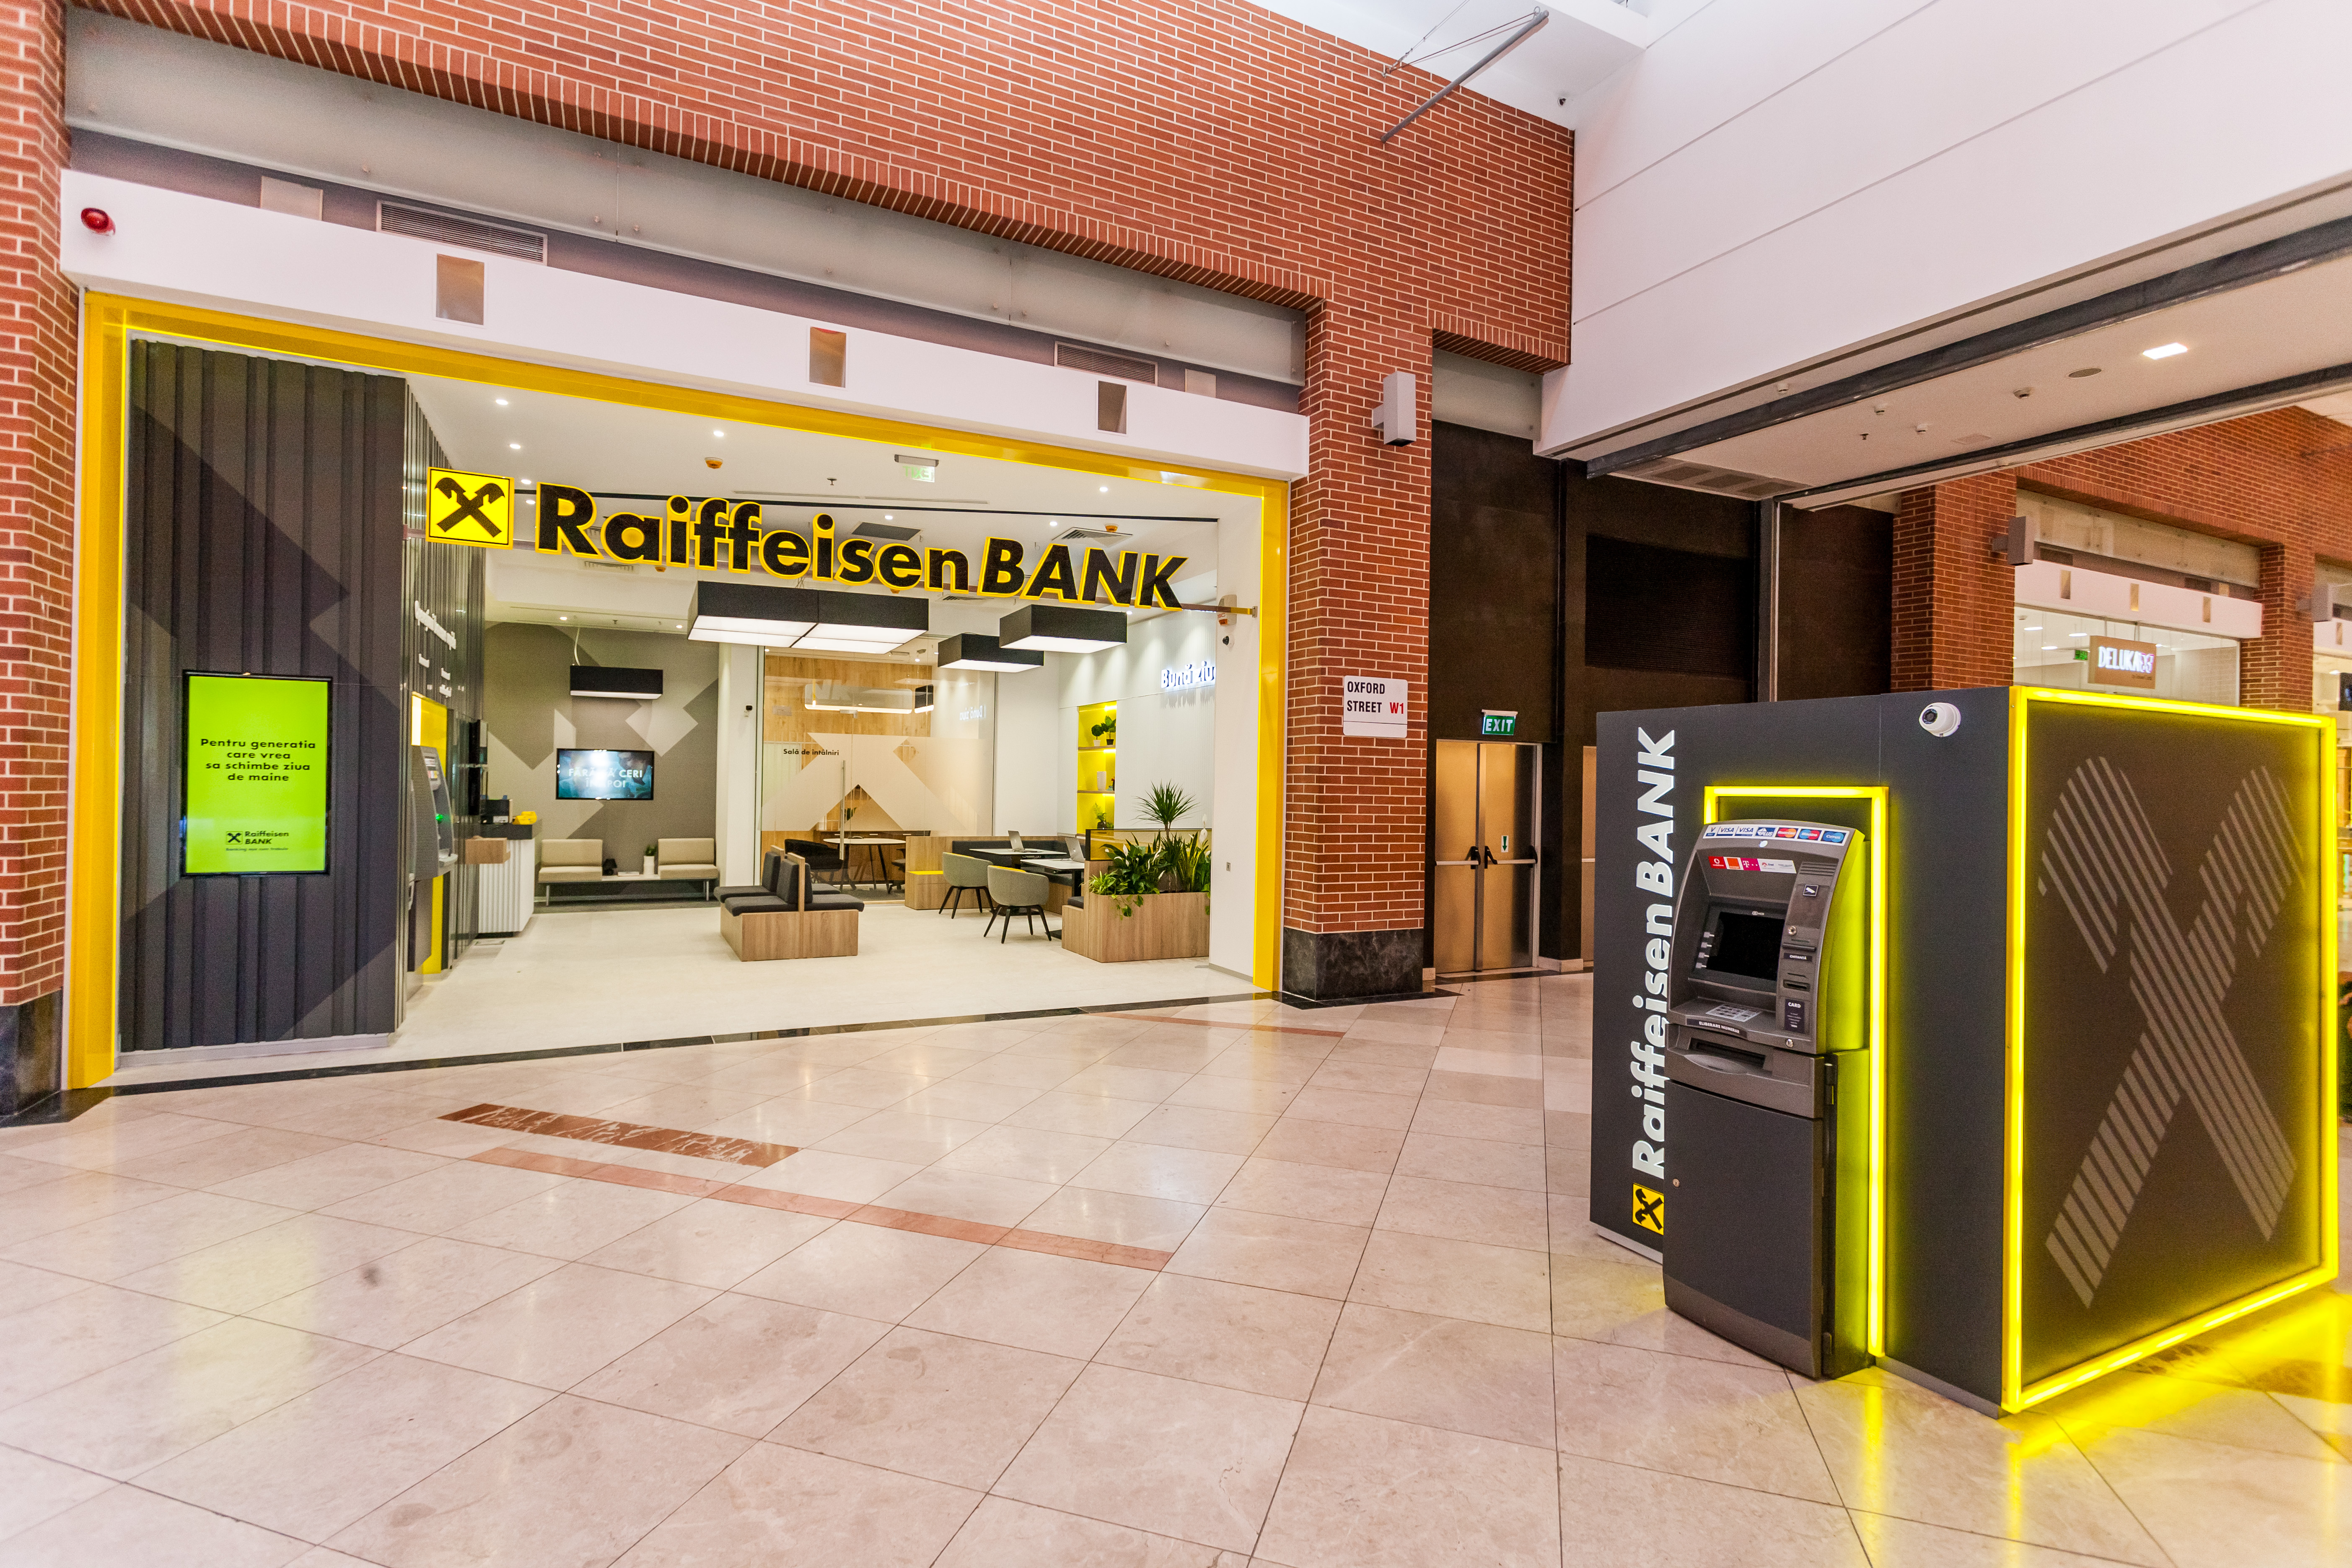 Raiffeisen Bank oferă credite de până la 500.000 de euro celor mai ambițioase IMM-uri, pe baza unui model de scalare personalizată